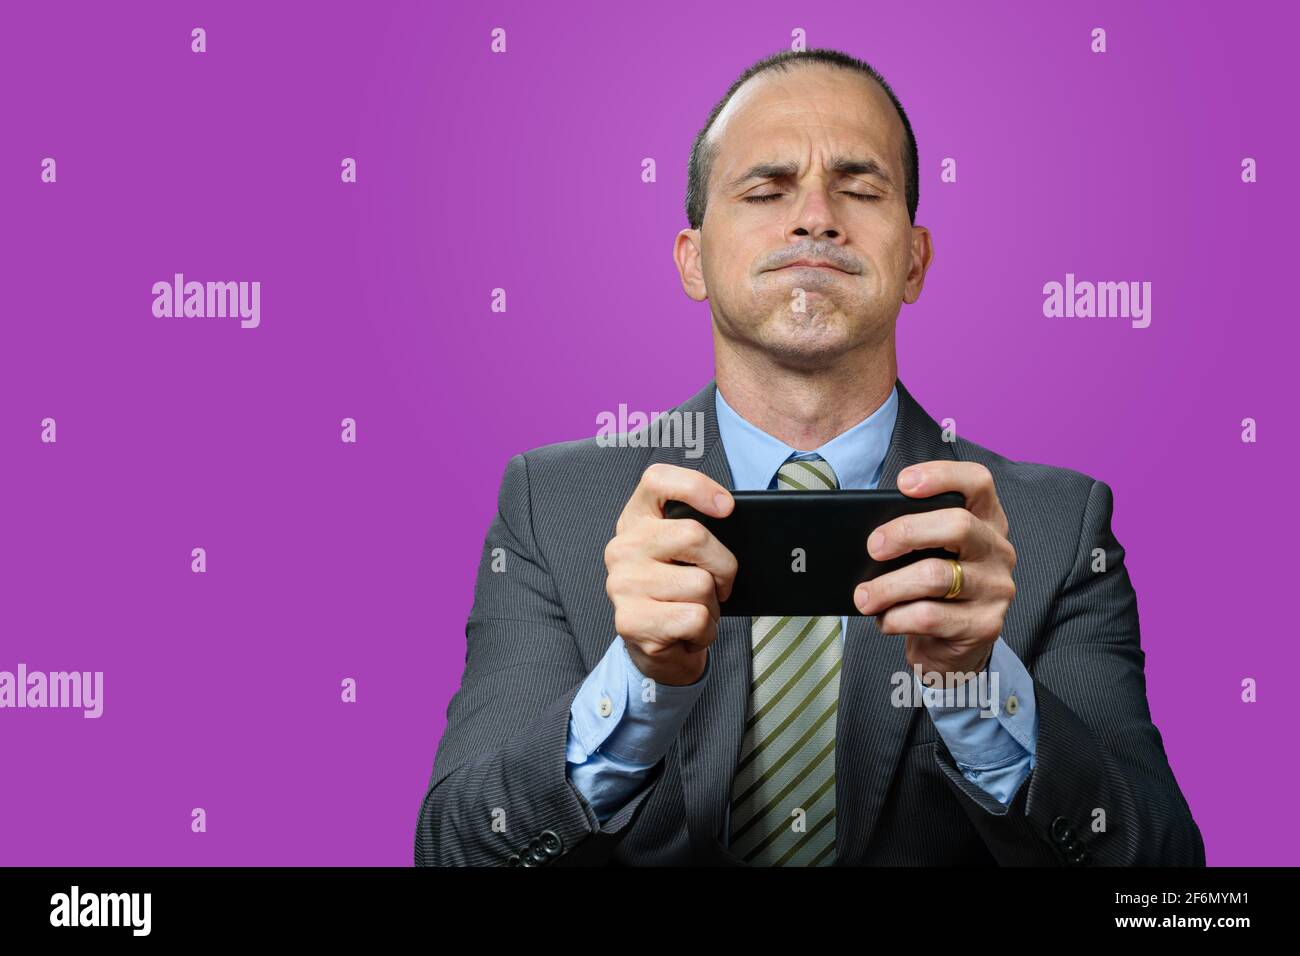 Uomo maturo con abito e cravatta, tenendo lo smartphone orizzontalmente, respirando attraverso il naso e con gli occhi chiusi. Sfondo viola. Viola Foto Stock